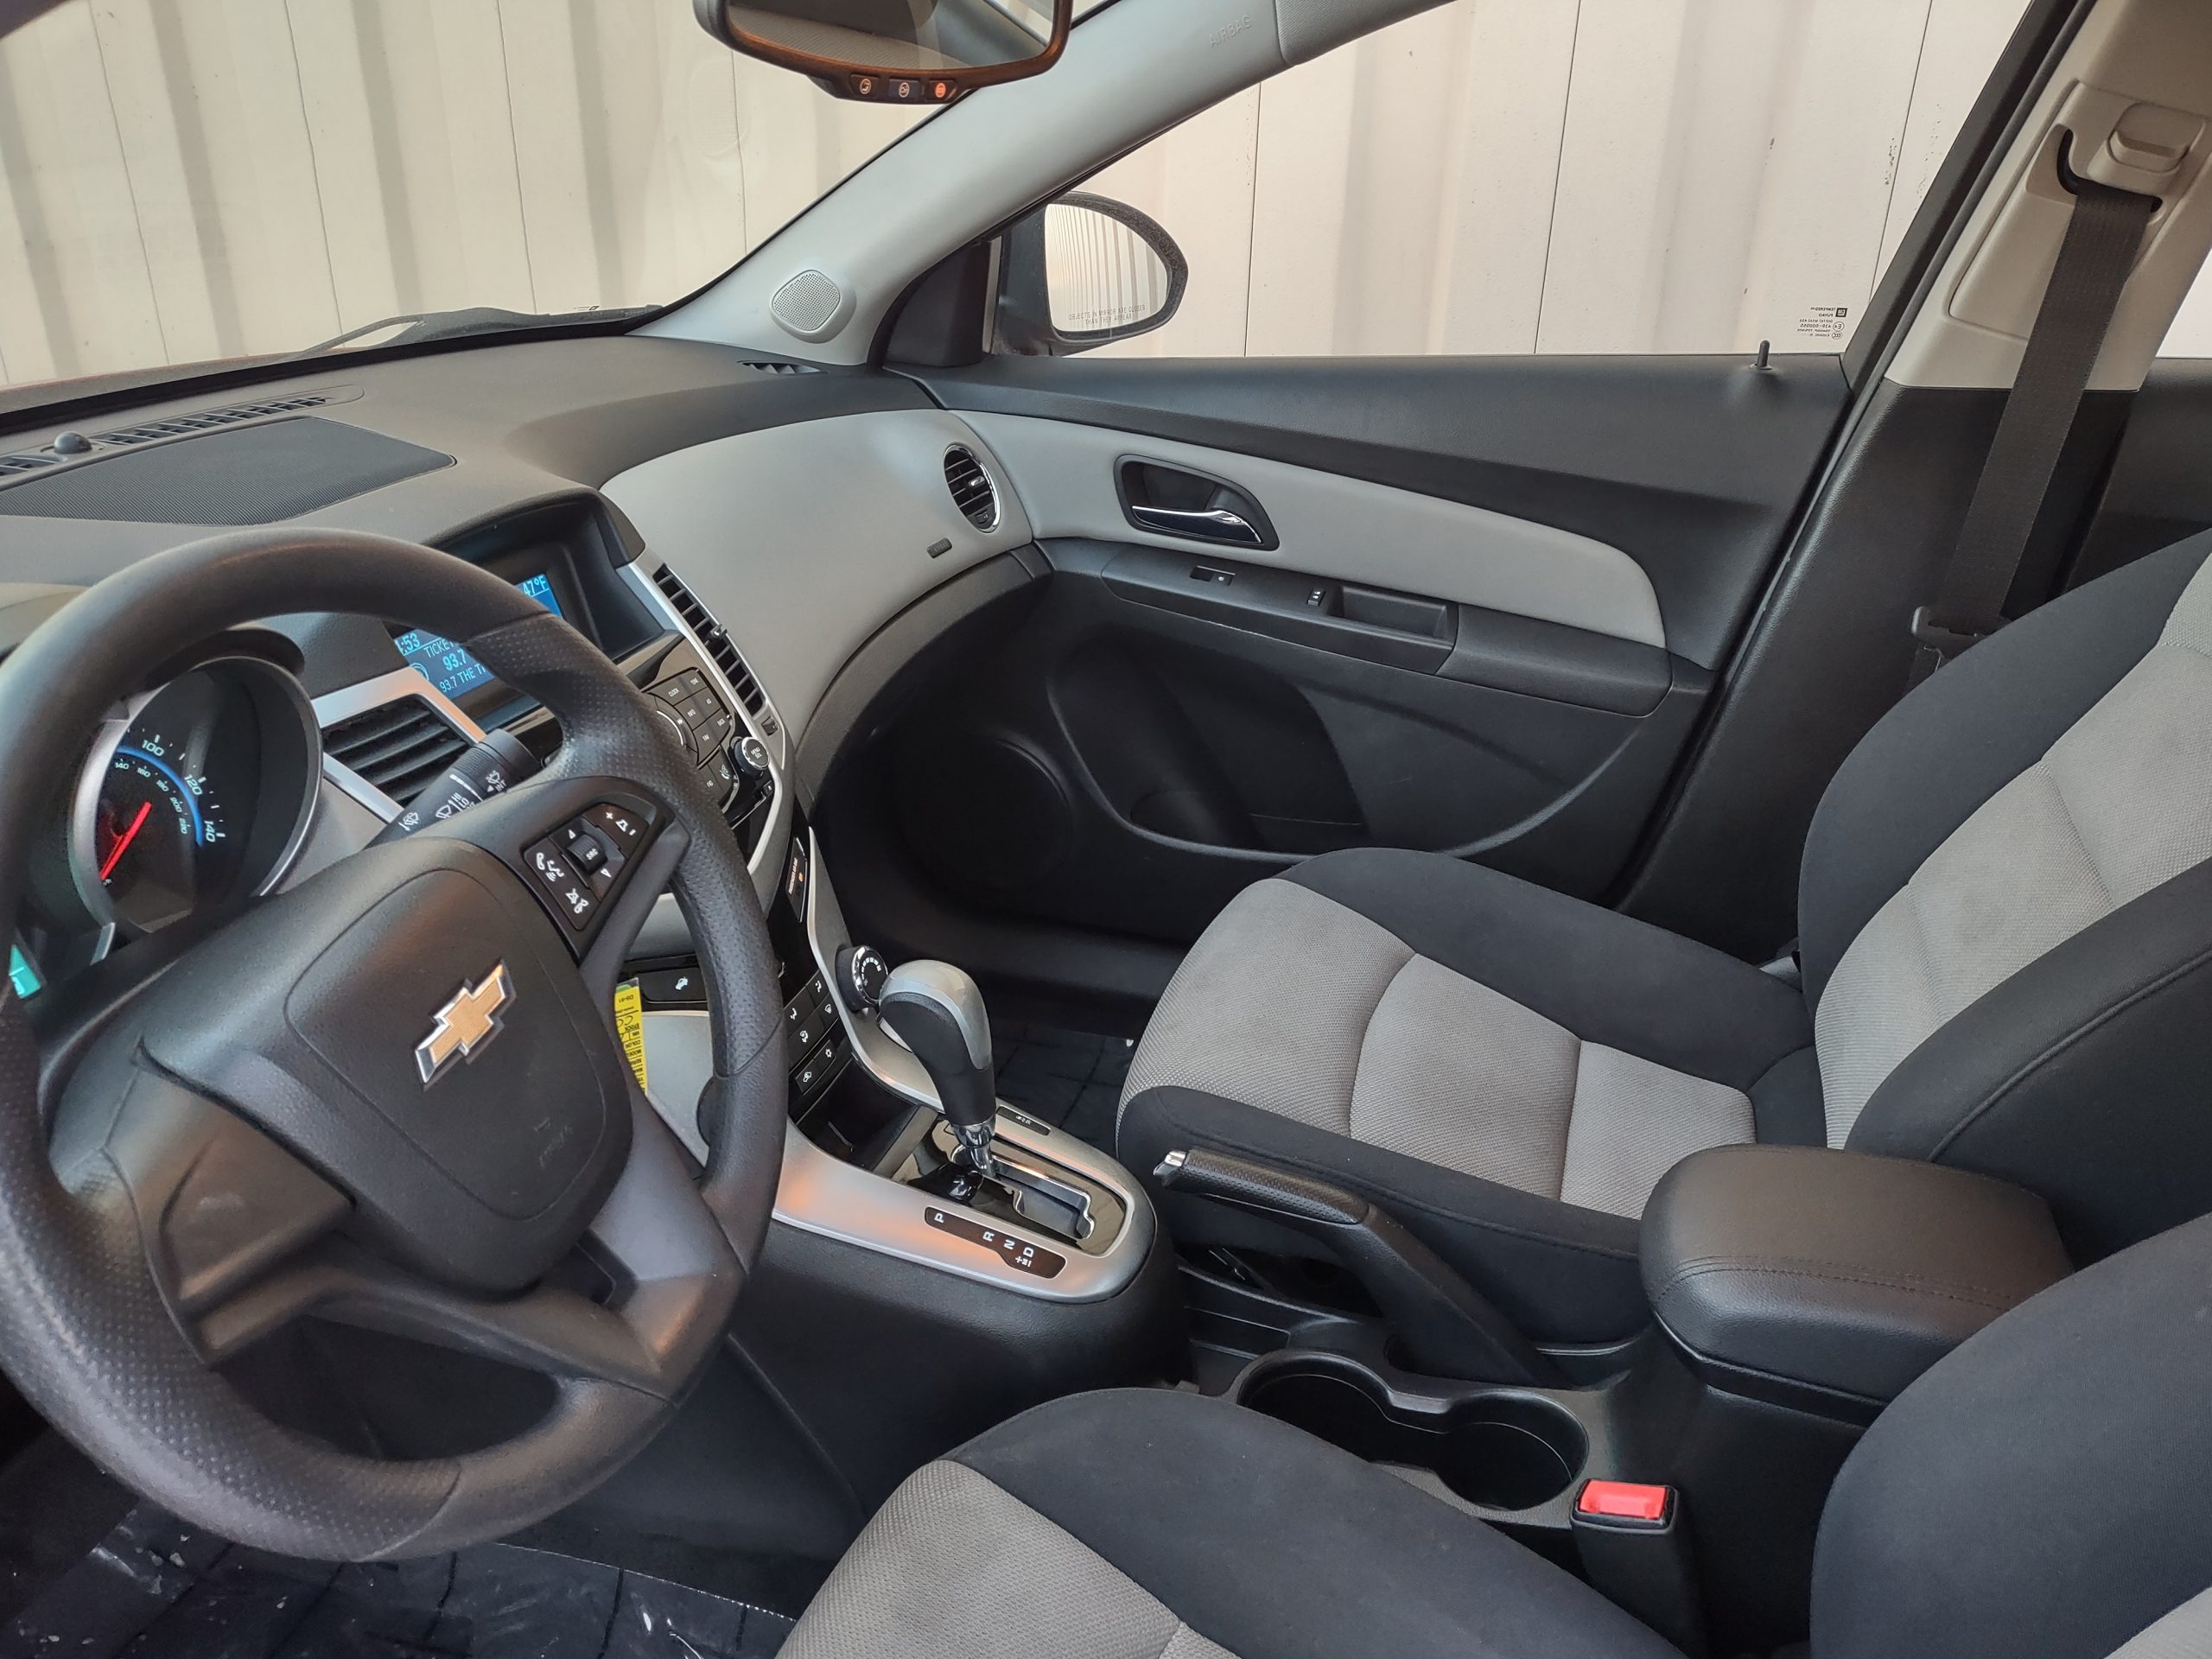 Used 2016 Chevrolet Cruze LS Sedan for sale in 